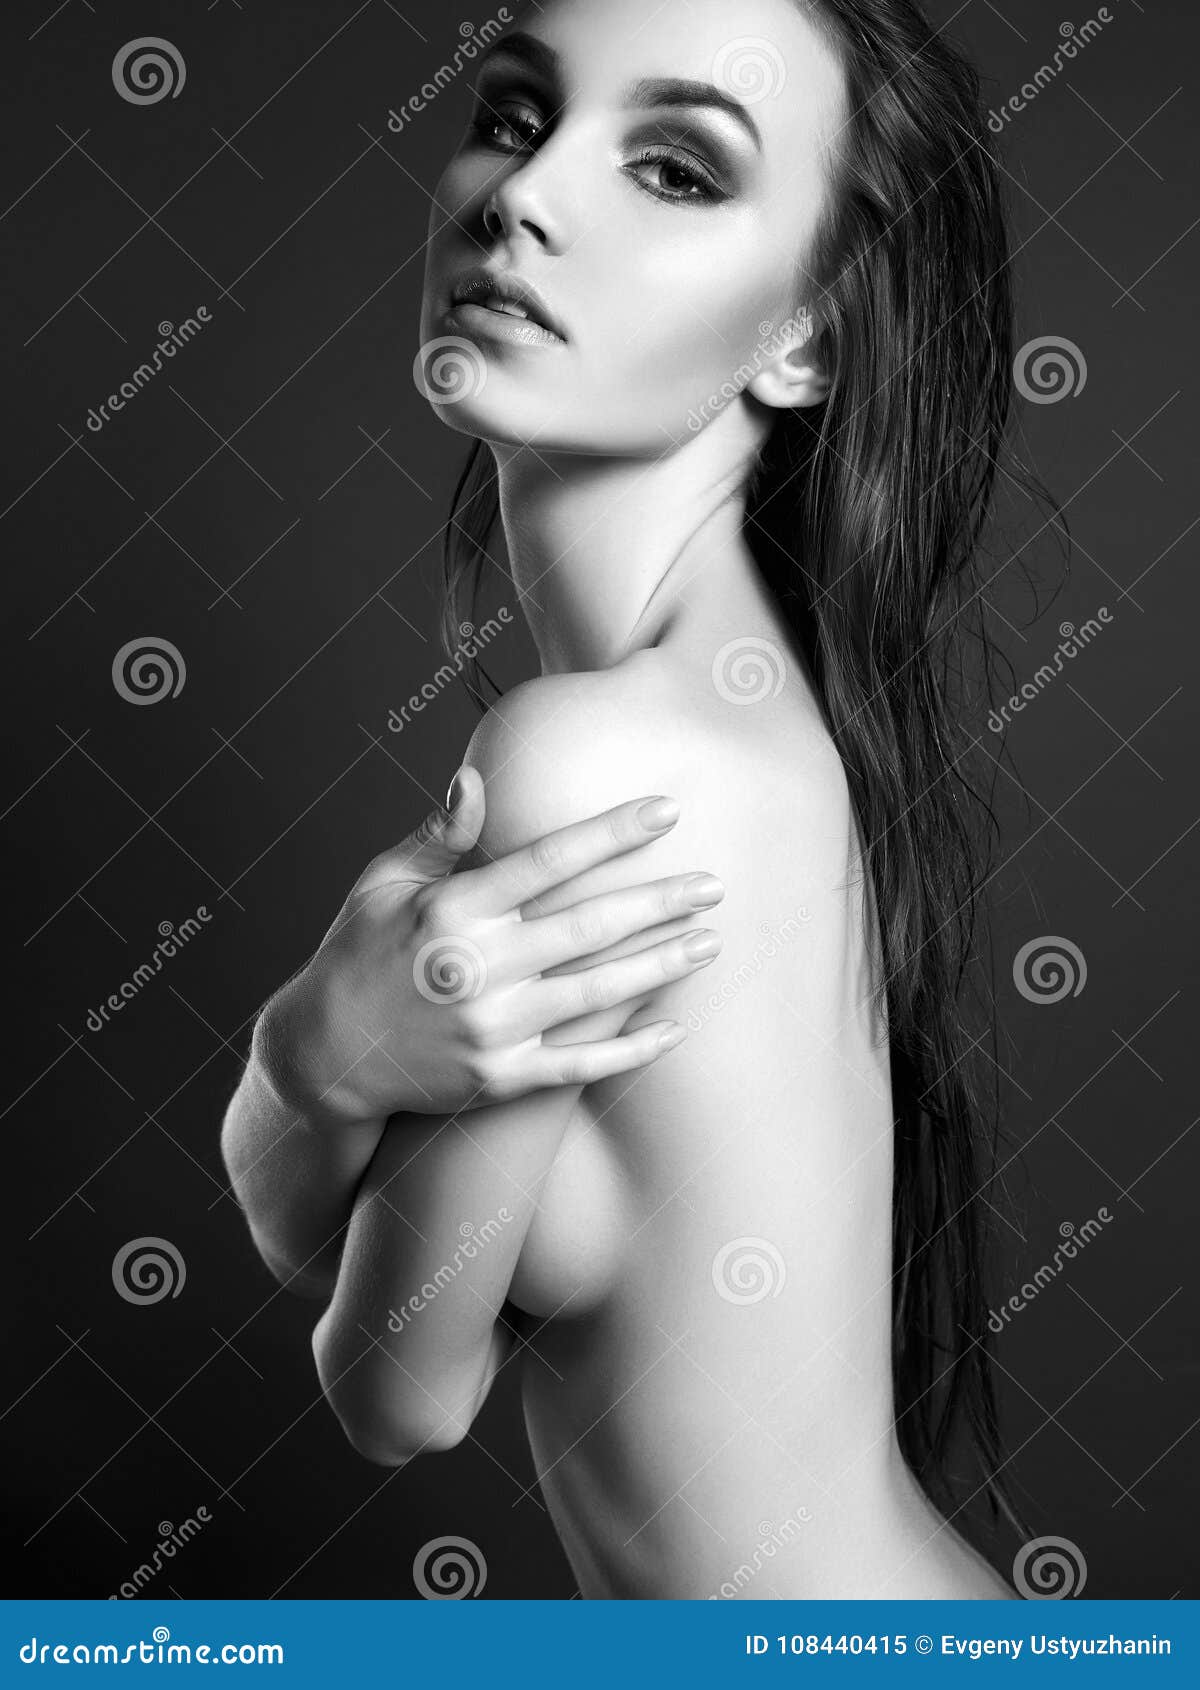 Amazing Wet Nude Woman. Beautiful Young Girl Stock Image - Image of naked,  long: 108440415